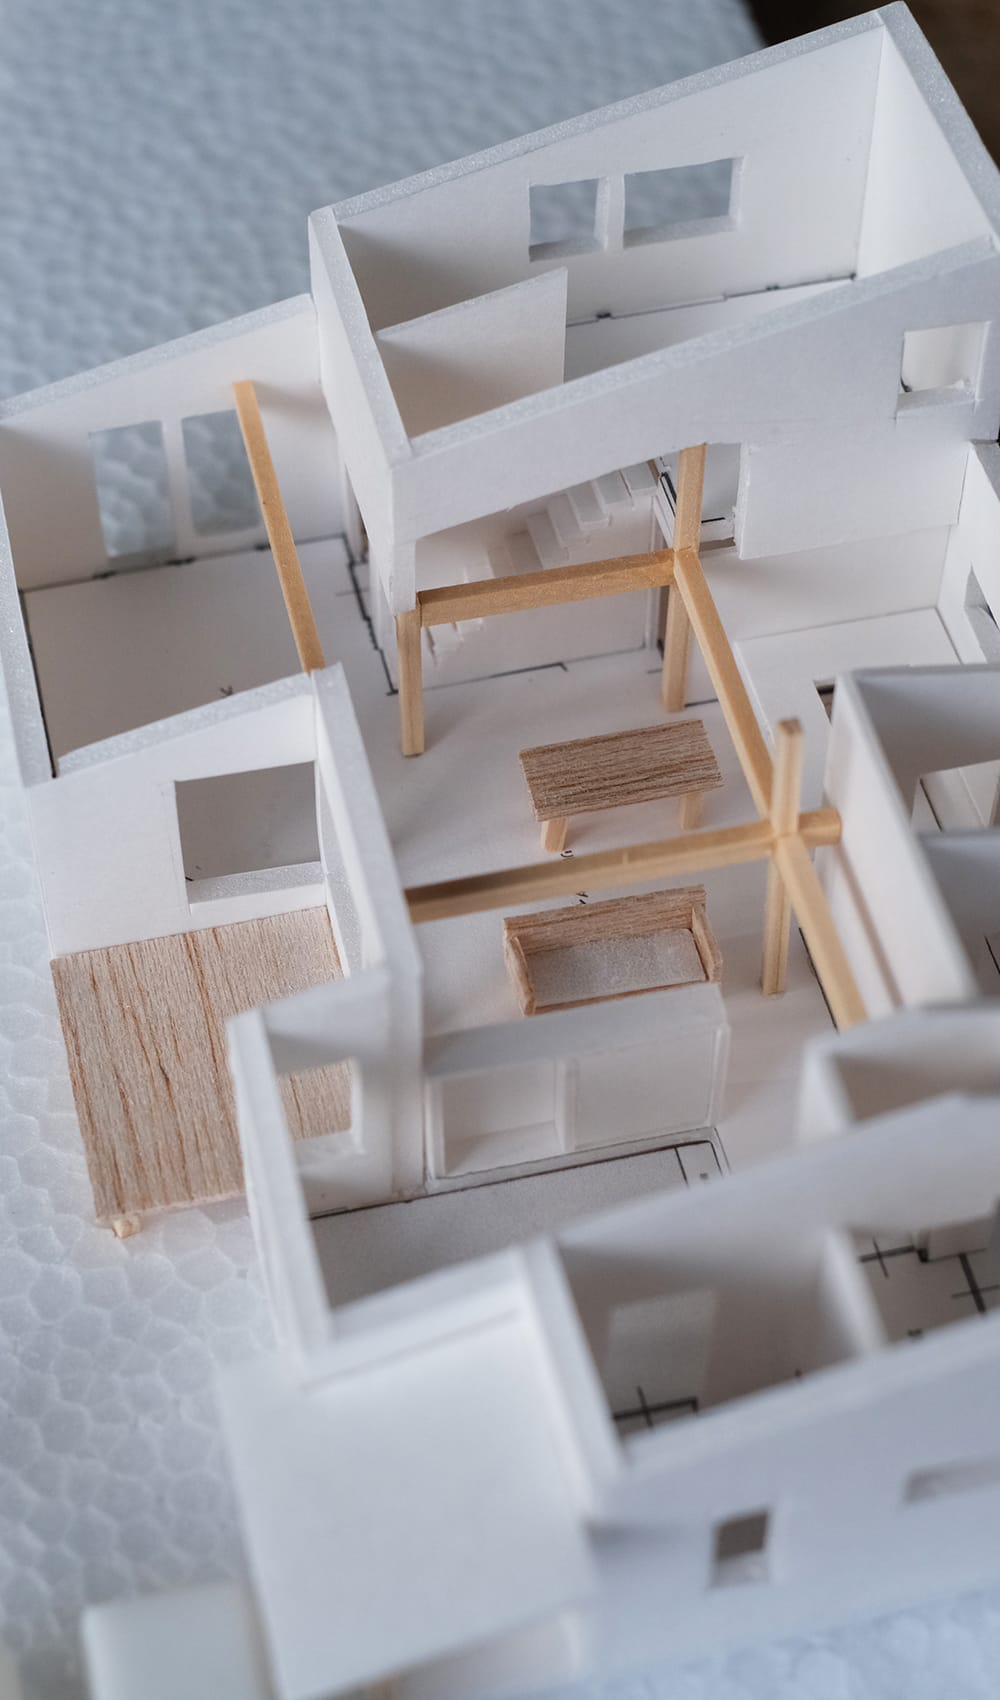 住宅模型室内の表現と空間の繋がり